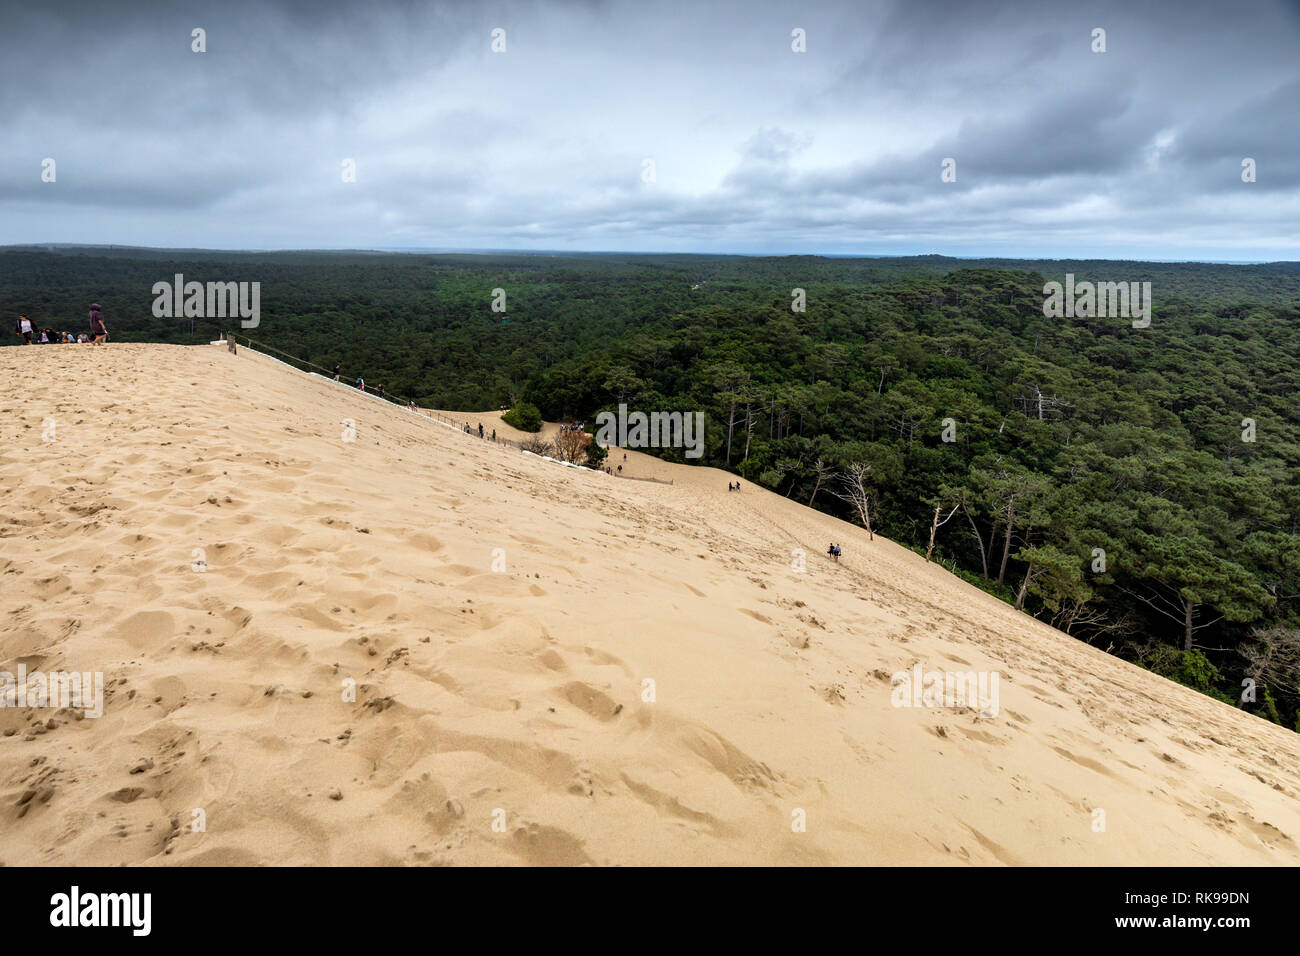 Die Düne von Pilat Die höchste Sanddüne Europas in La Teste-de-Buch in der Bucht von Arcachon, Frankreich, 60 km von Bordeaux entfernt Stockfoto